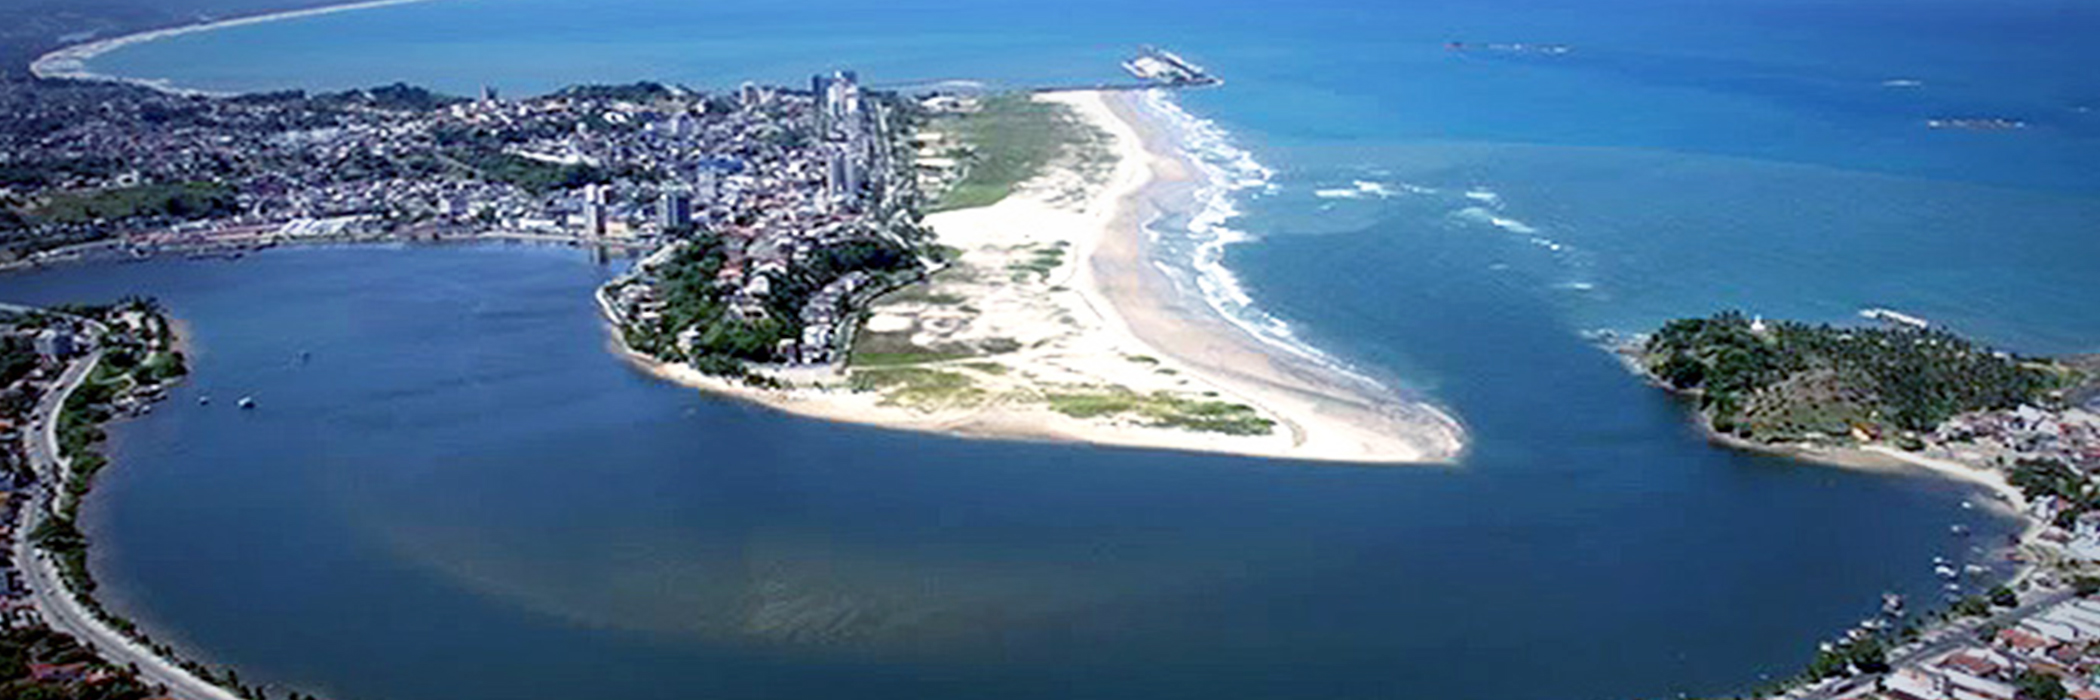 Destino Costa do Cacau - Bahia - BA ROTEIRO